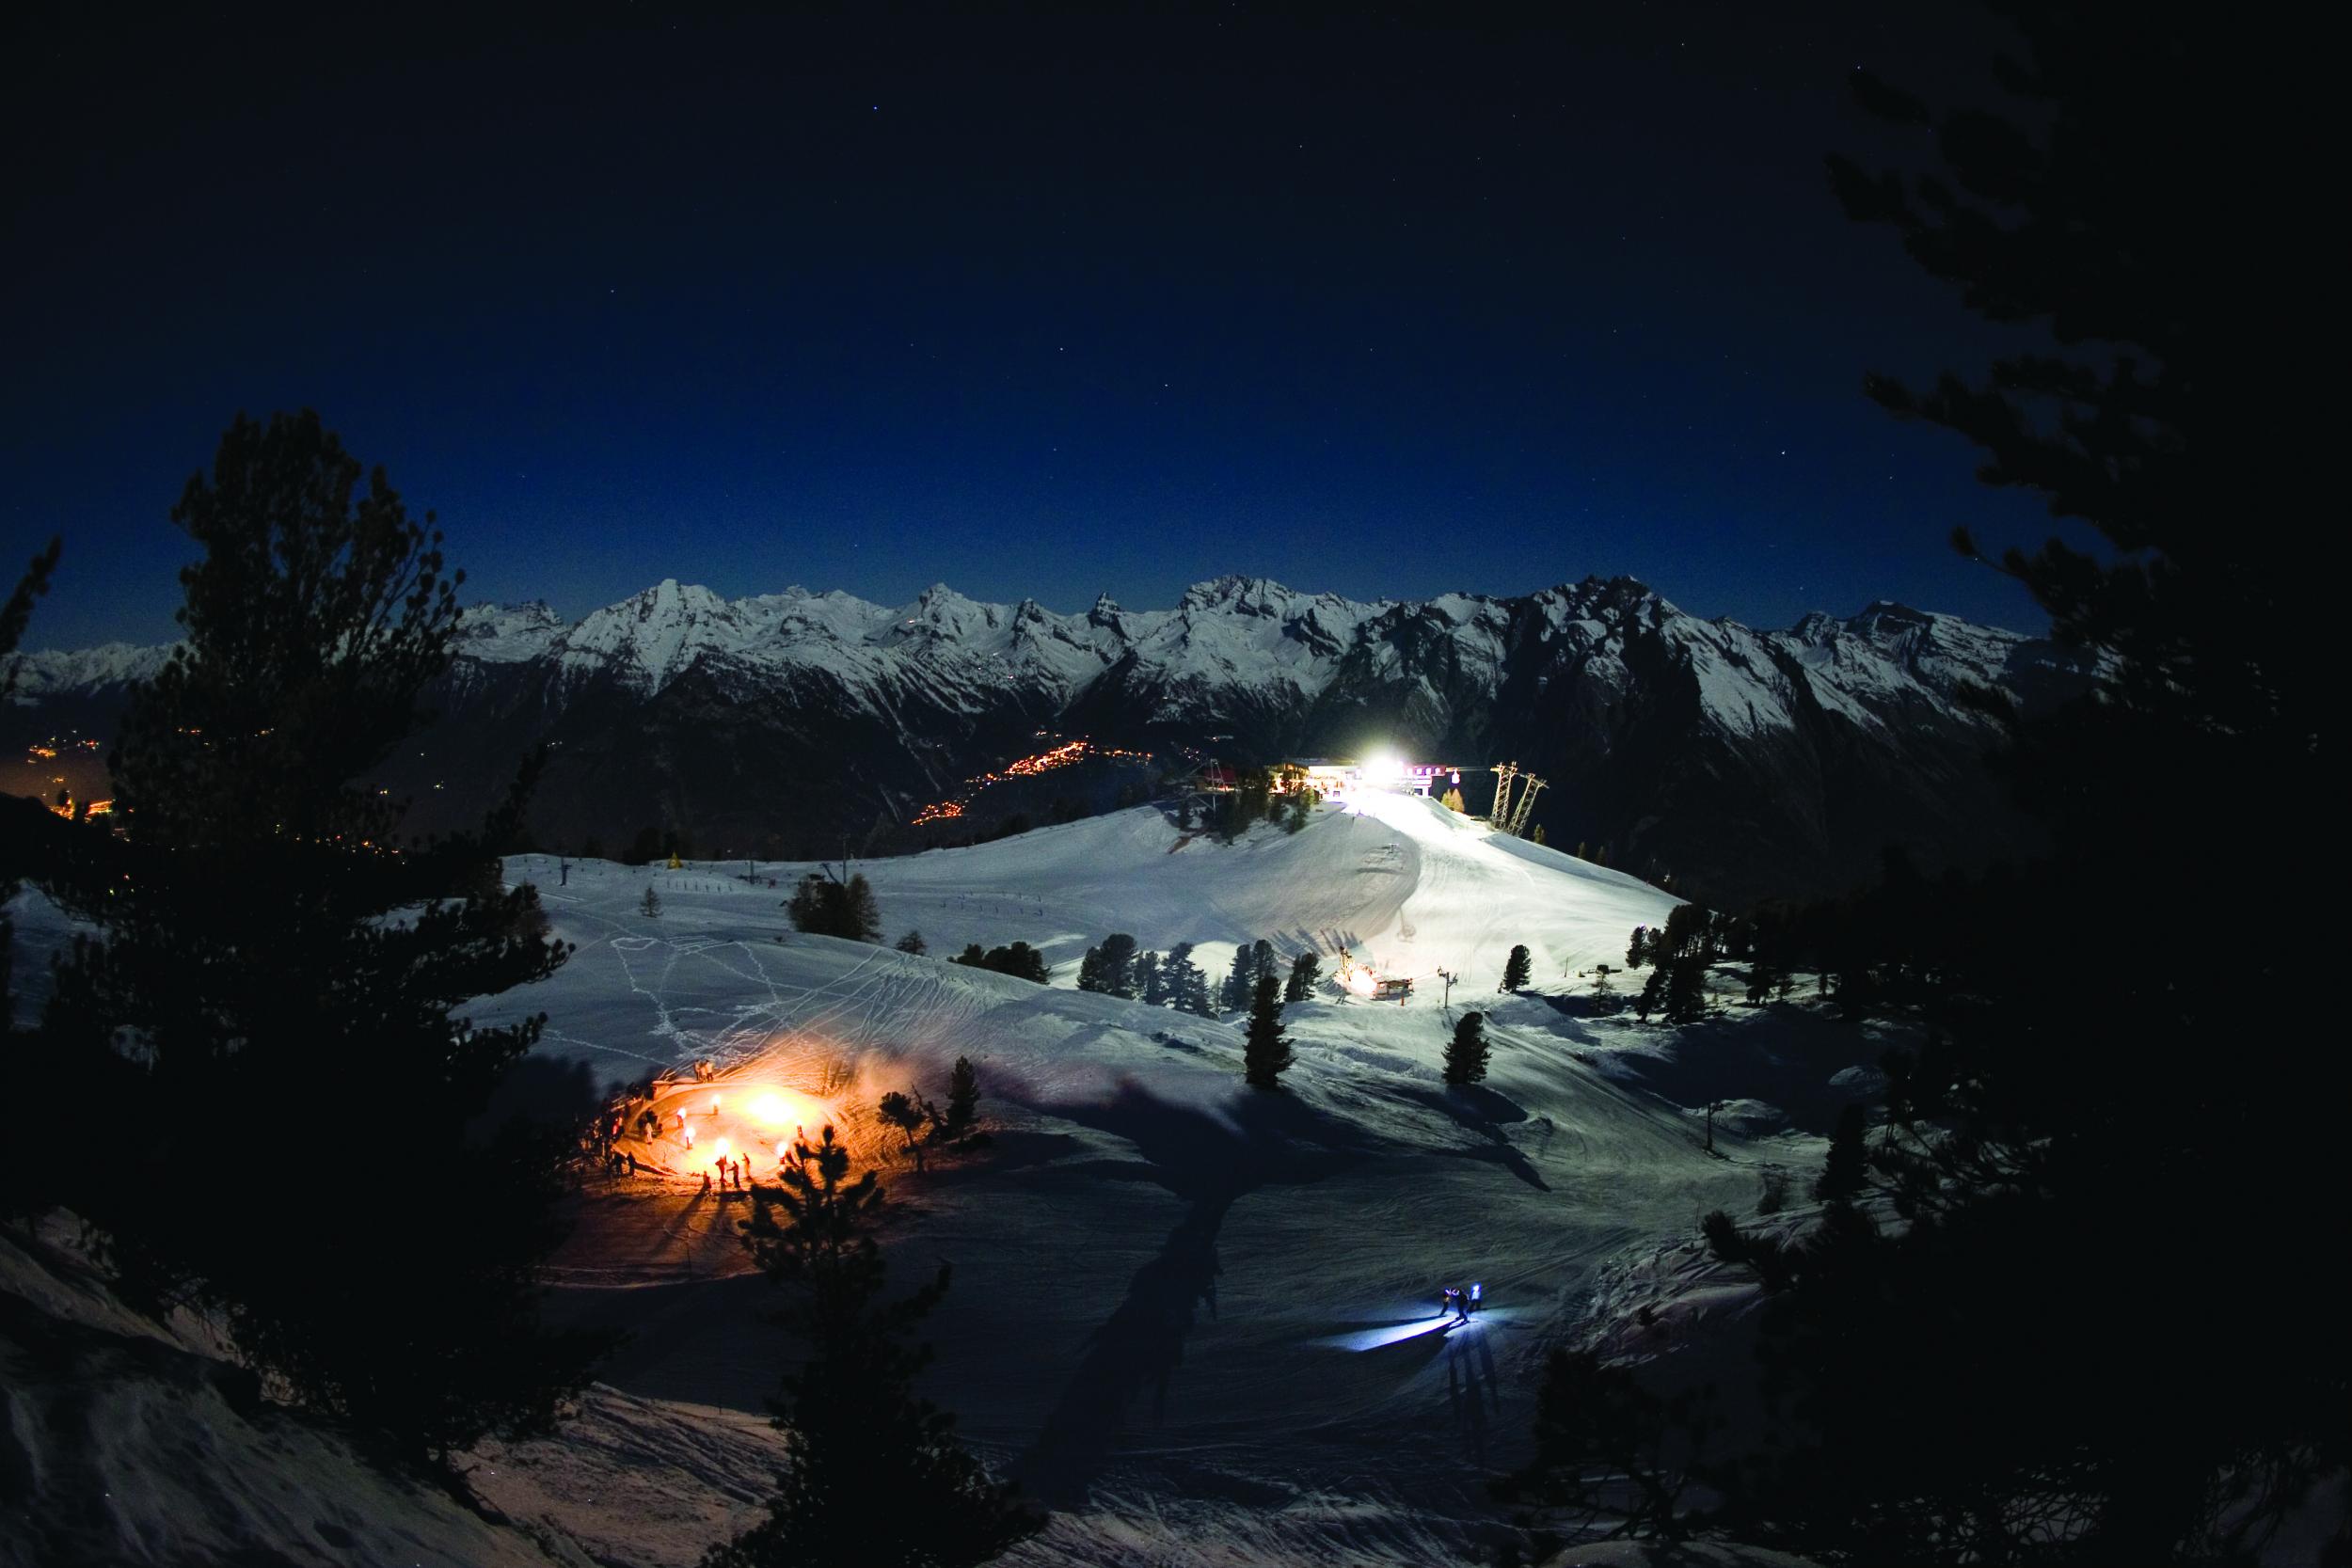 Night-skiing in Nendaz